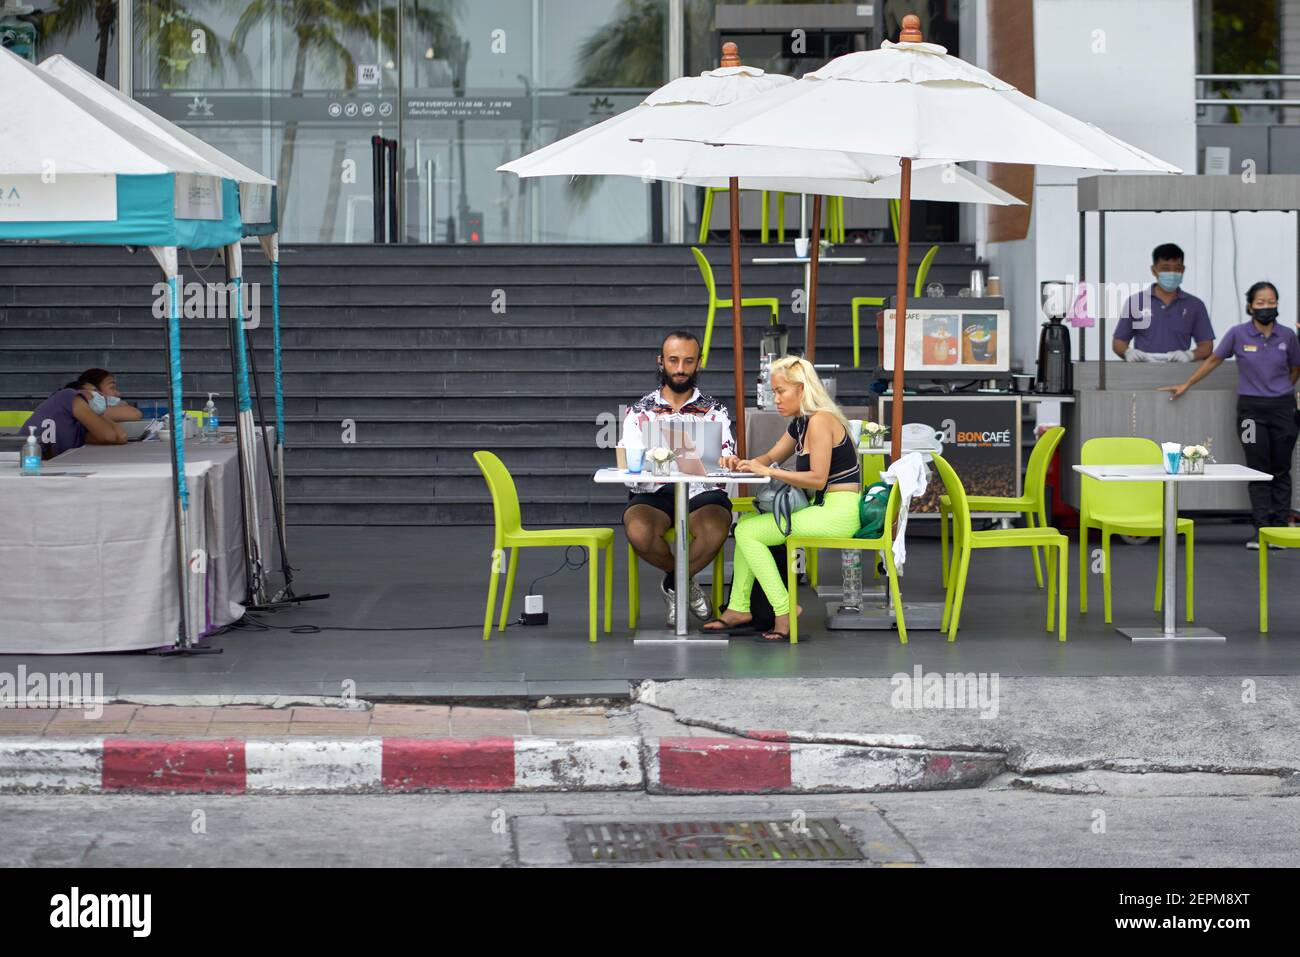 Ein Paar, das Laptops benutzte, saß an einer Kaffeebar auf dem Straßenbelag, während eine Frau bunte grüne Leggings trug. Thailand Südostasien Stockfoto